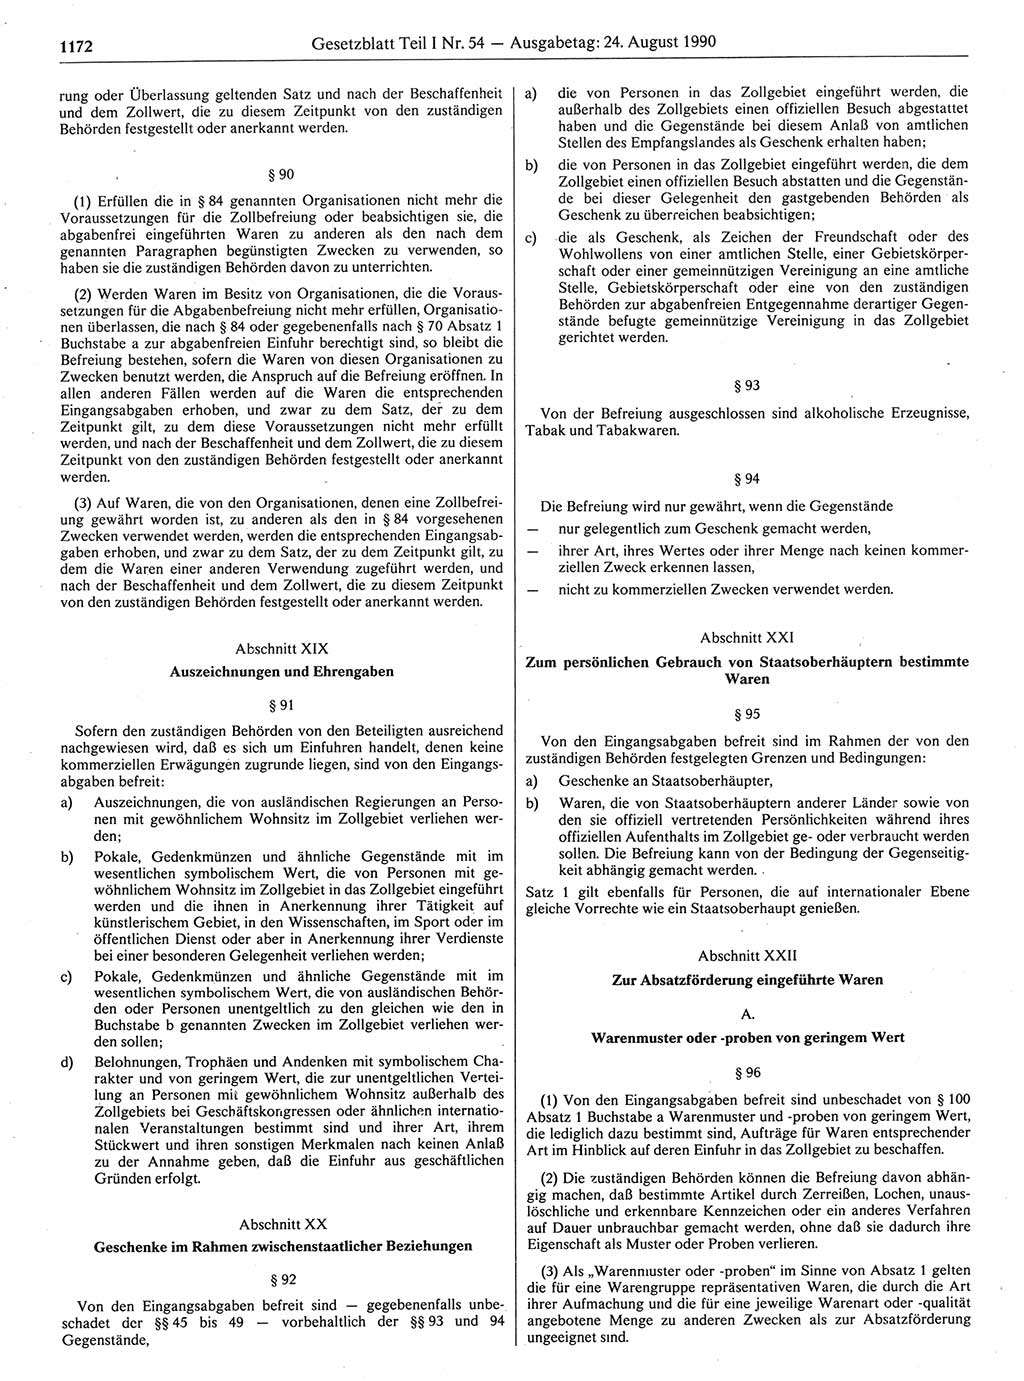 Gesetzblatt (GBl.) der Deutschen Demokratischen Republik (DDR) Teil Ⅰ 1990, Seite 1172 (GBl. DDR Ⅰ 1990, S. 1172)